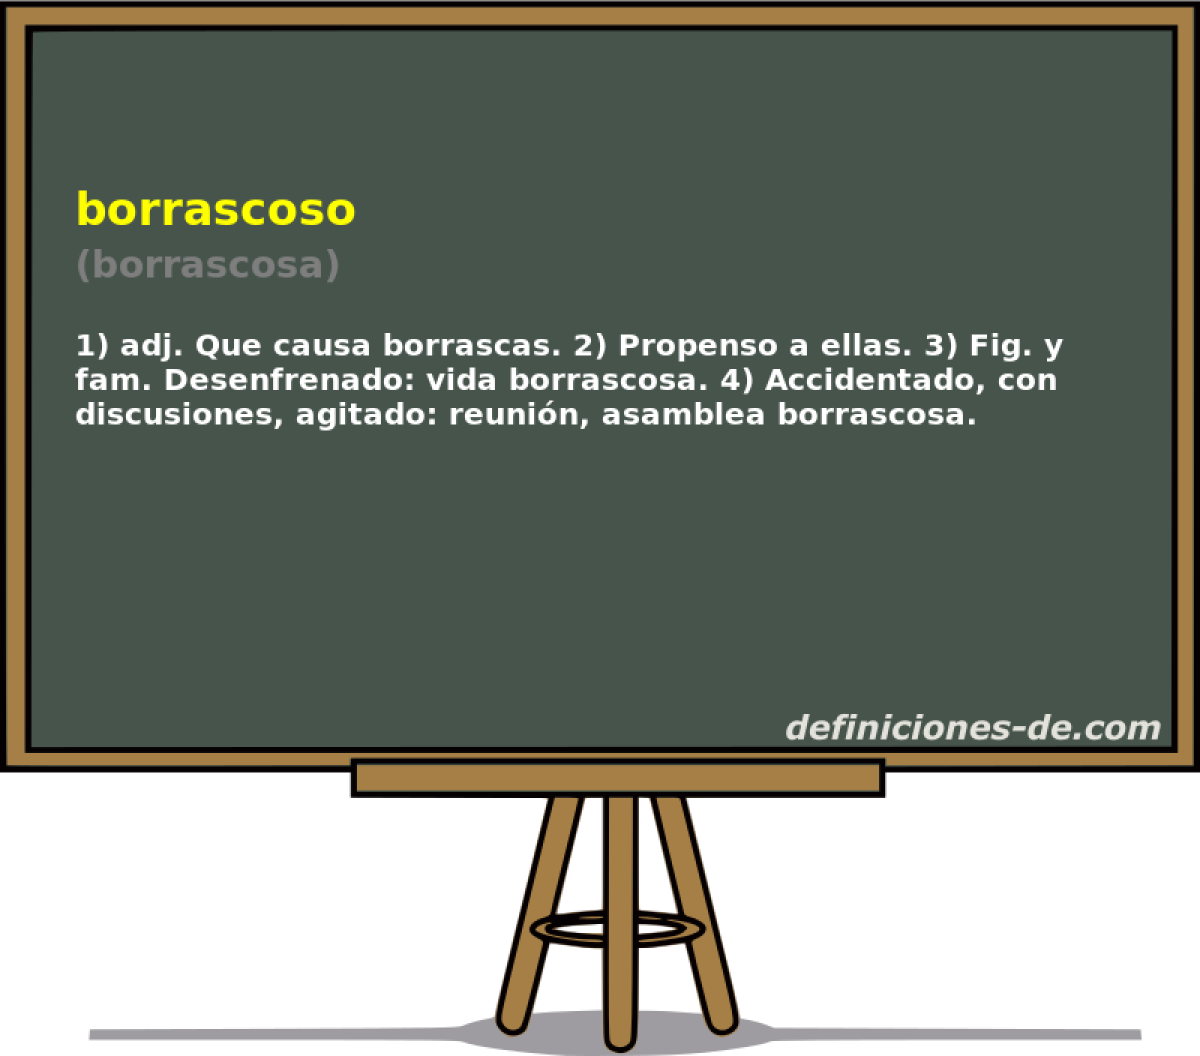 borrascoso (borrascosa)